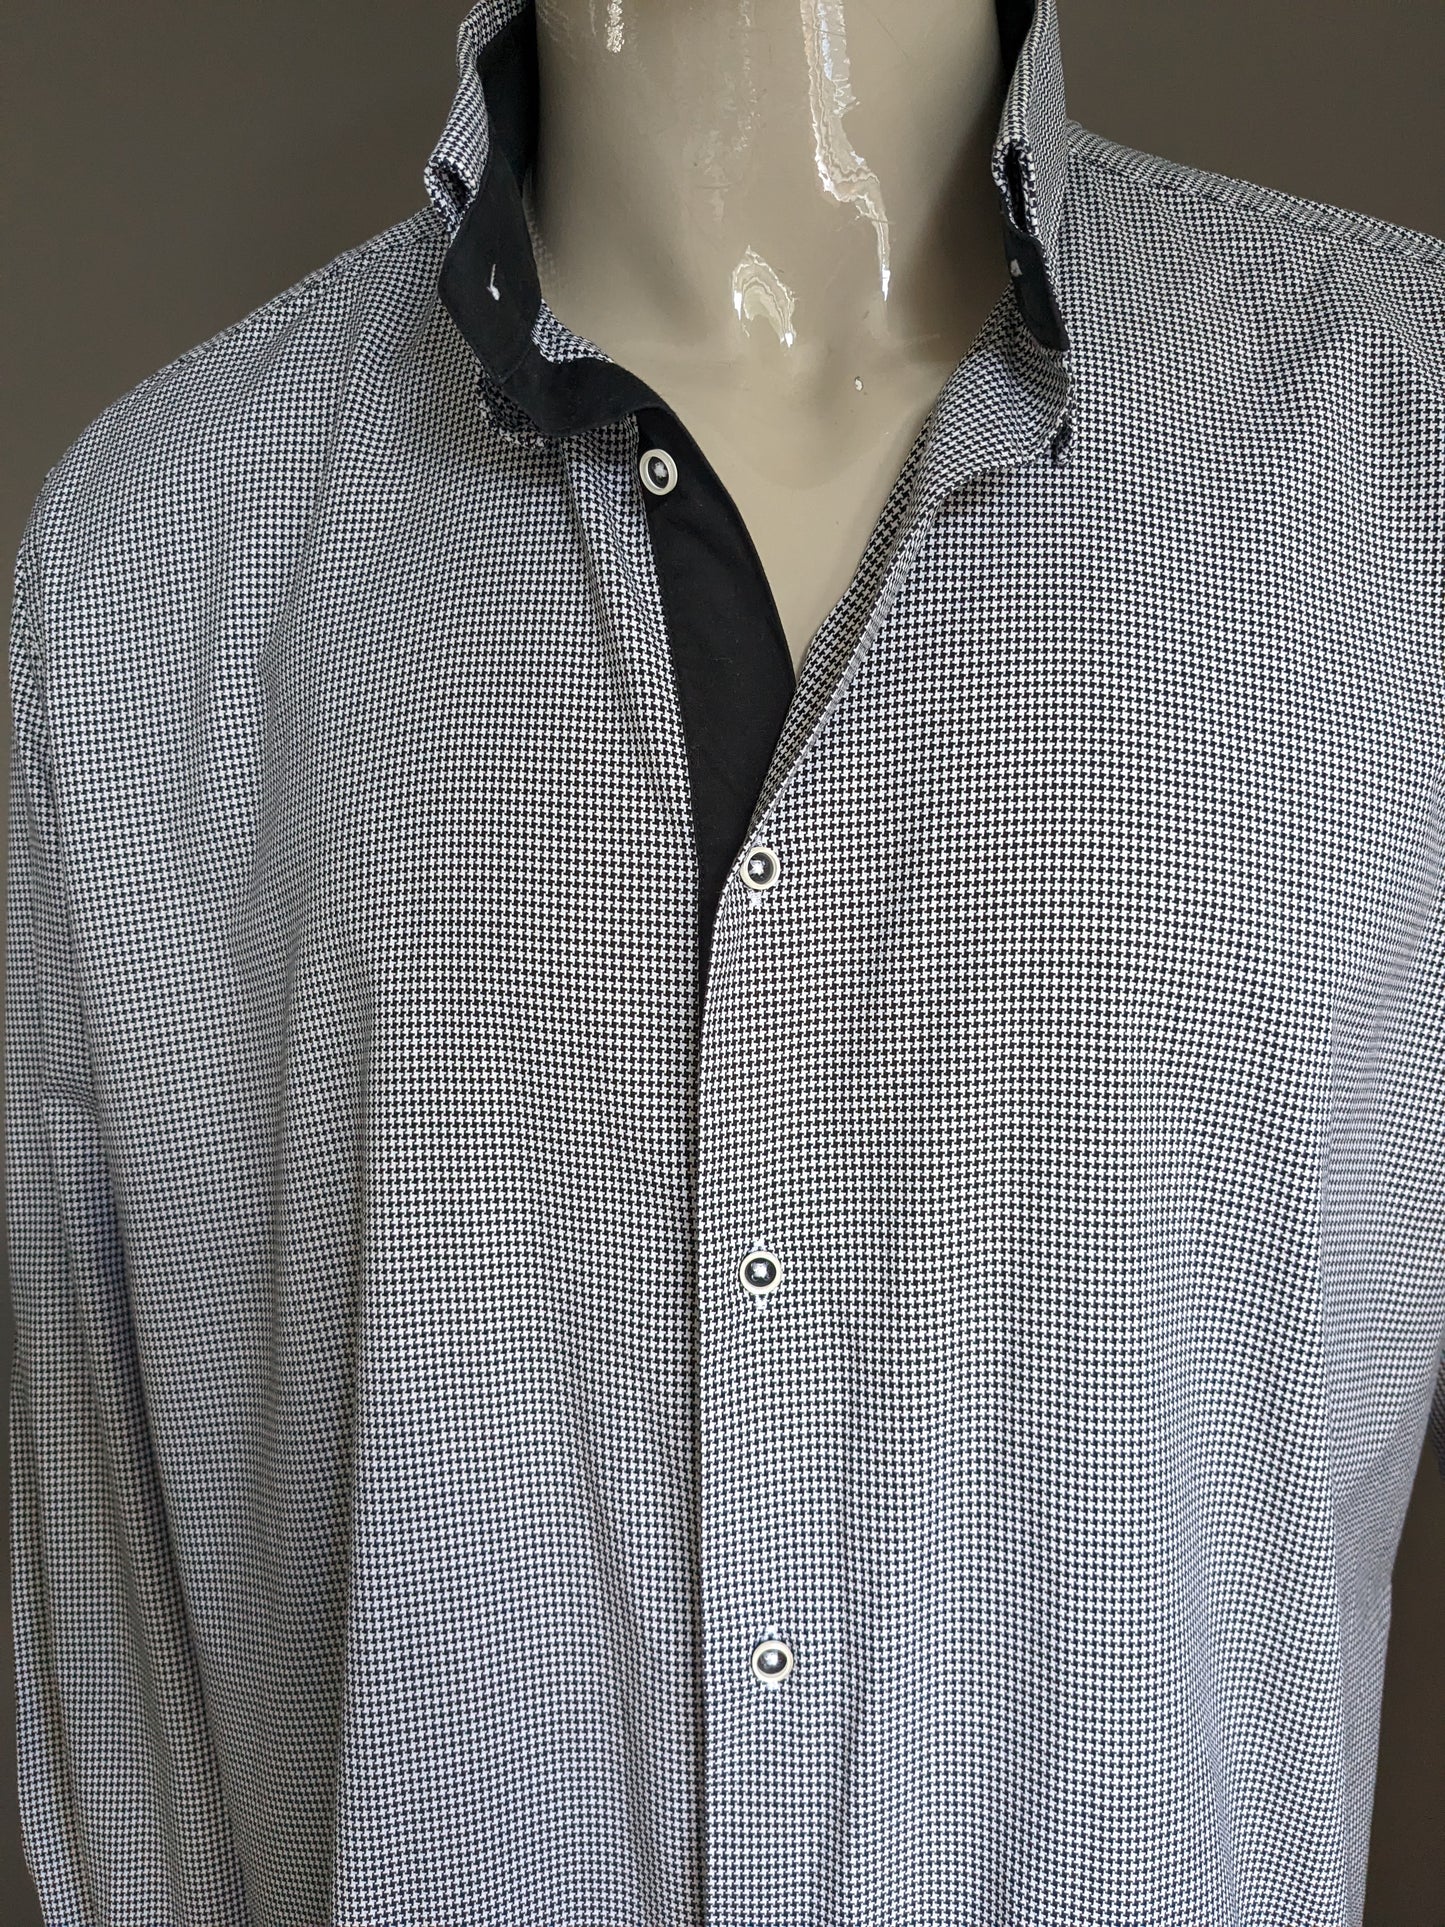 Camicia Blumfontain con patch di gomito. Motivo in bianco e nero. Dimensione 2xl / xxl.